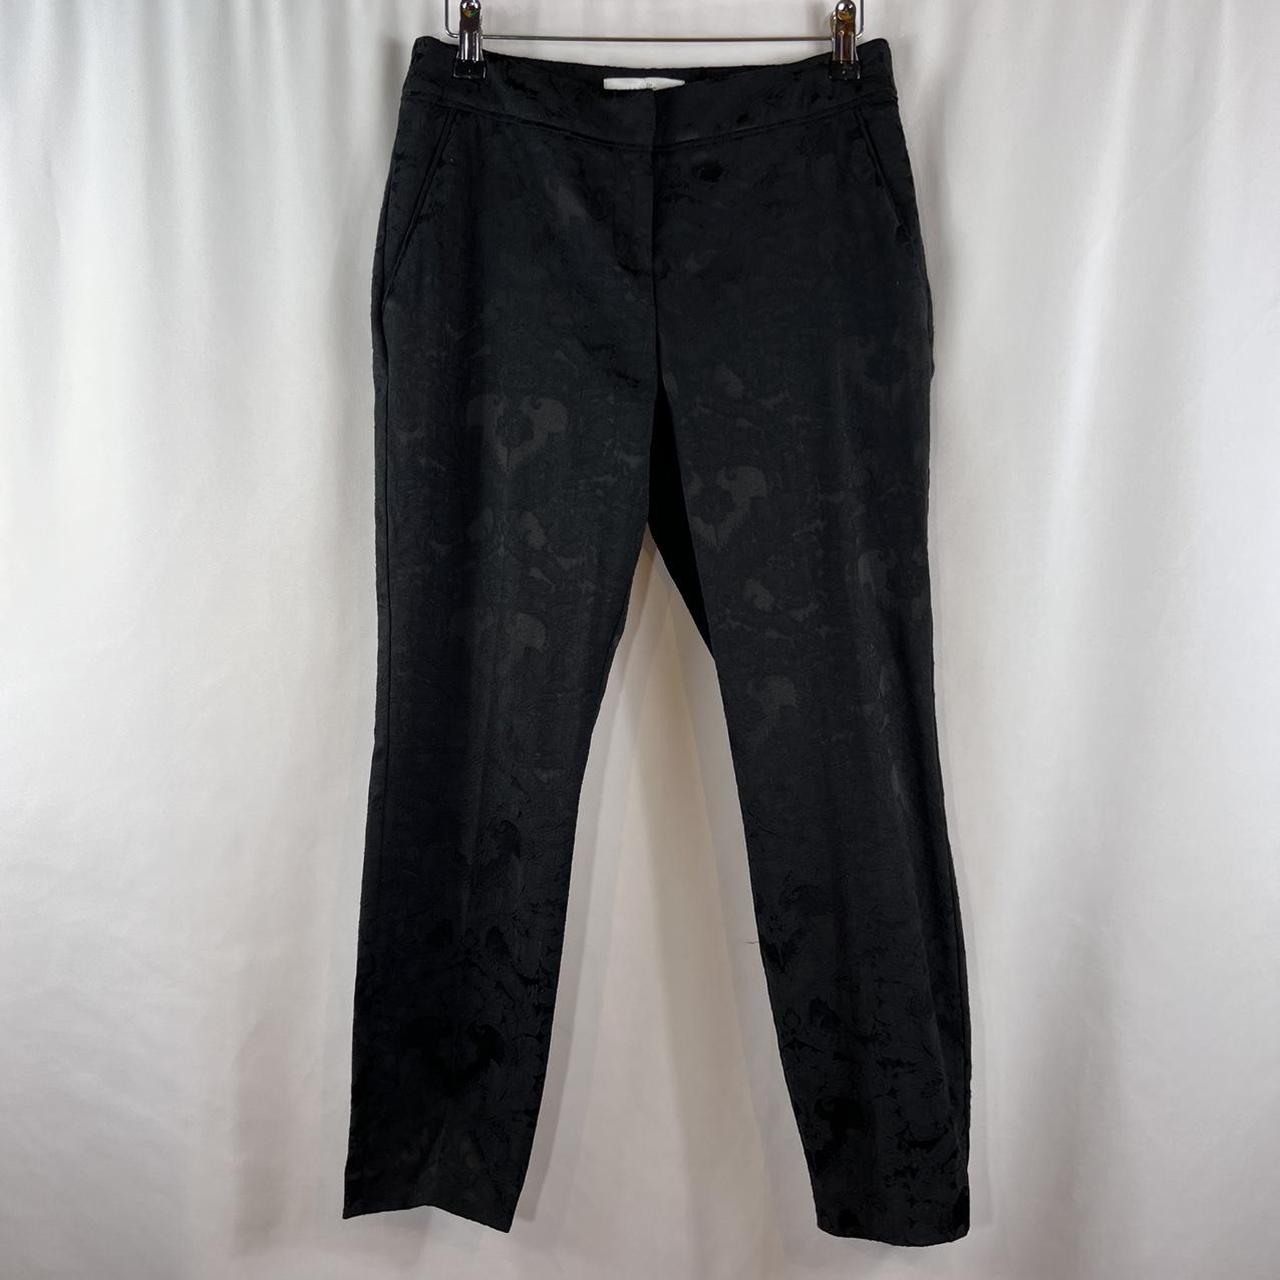 Vintage Y2K Wallis Black Floral Capri Trousers with... - Depop